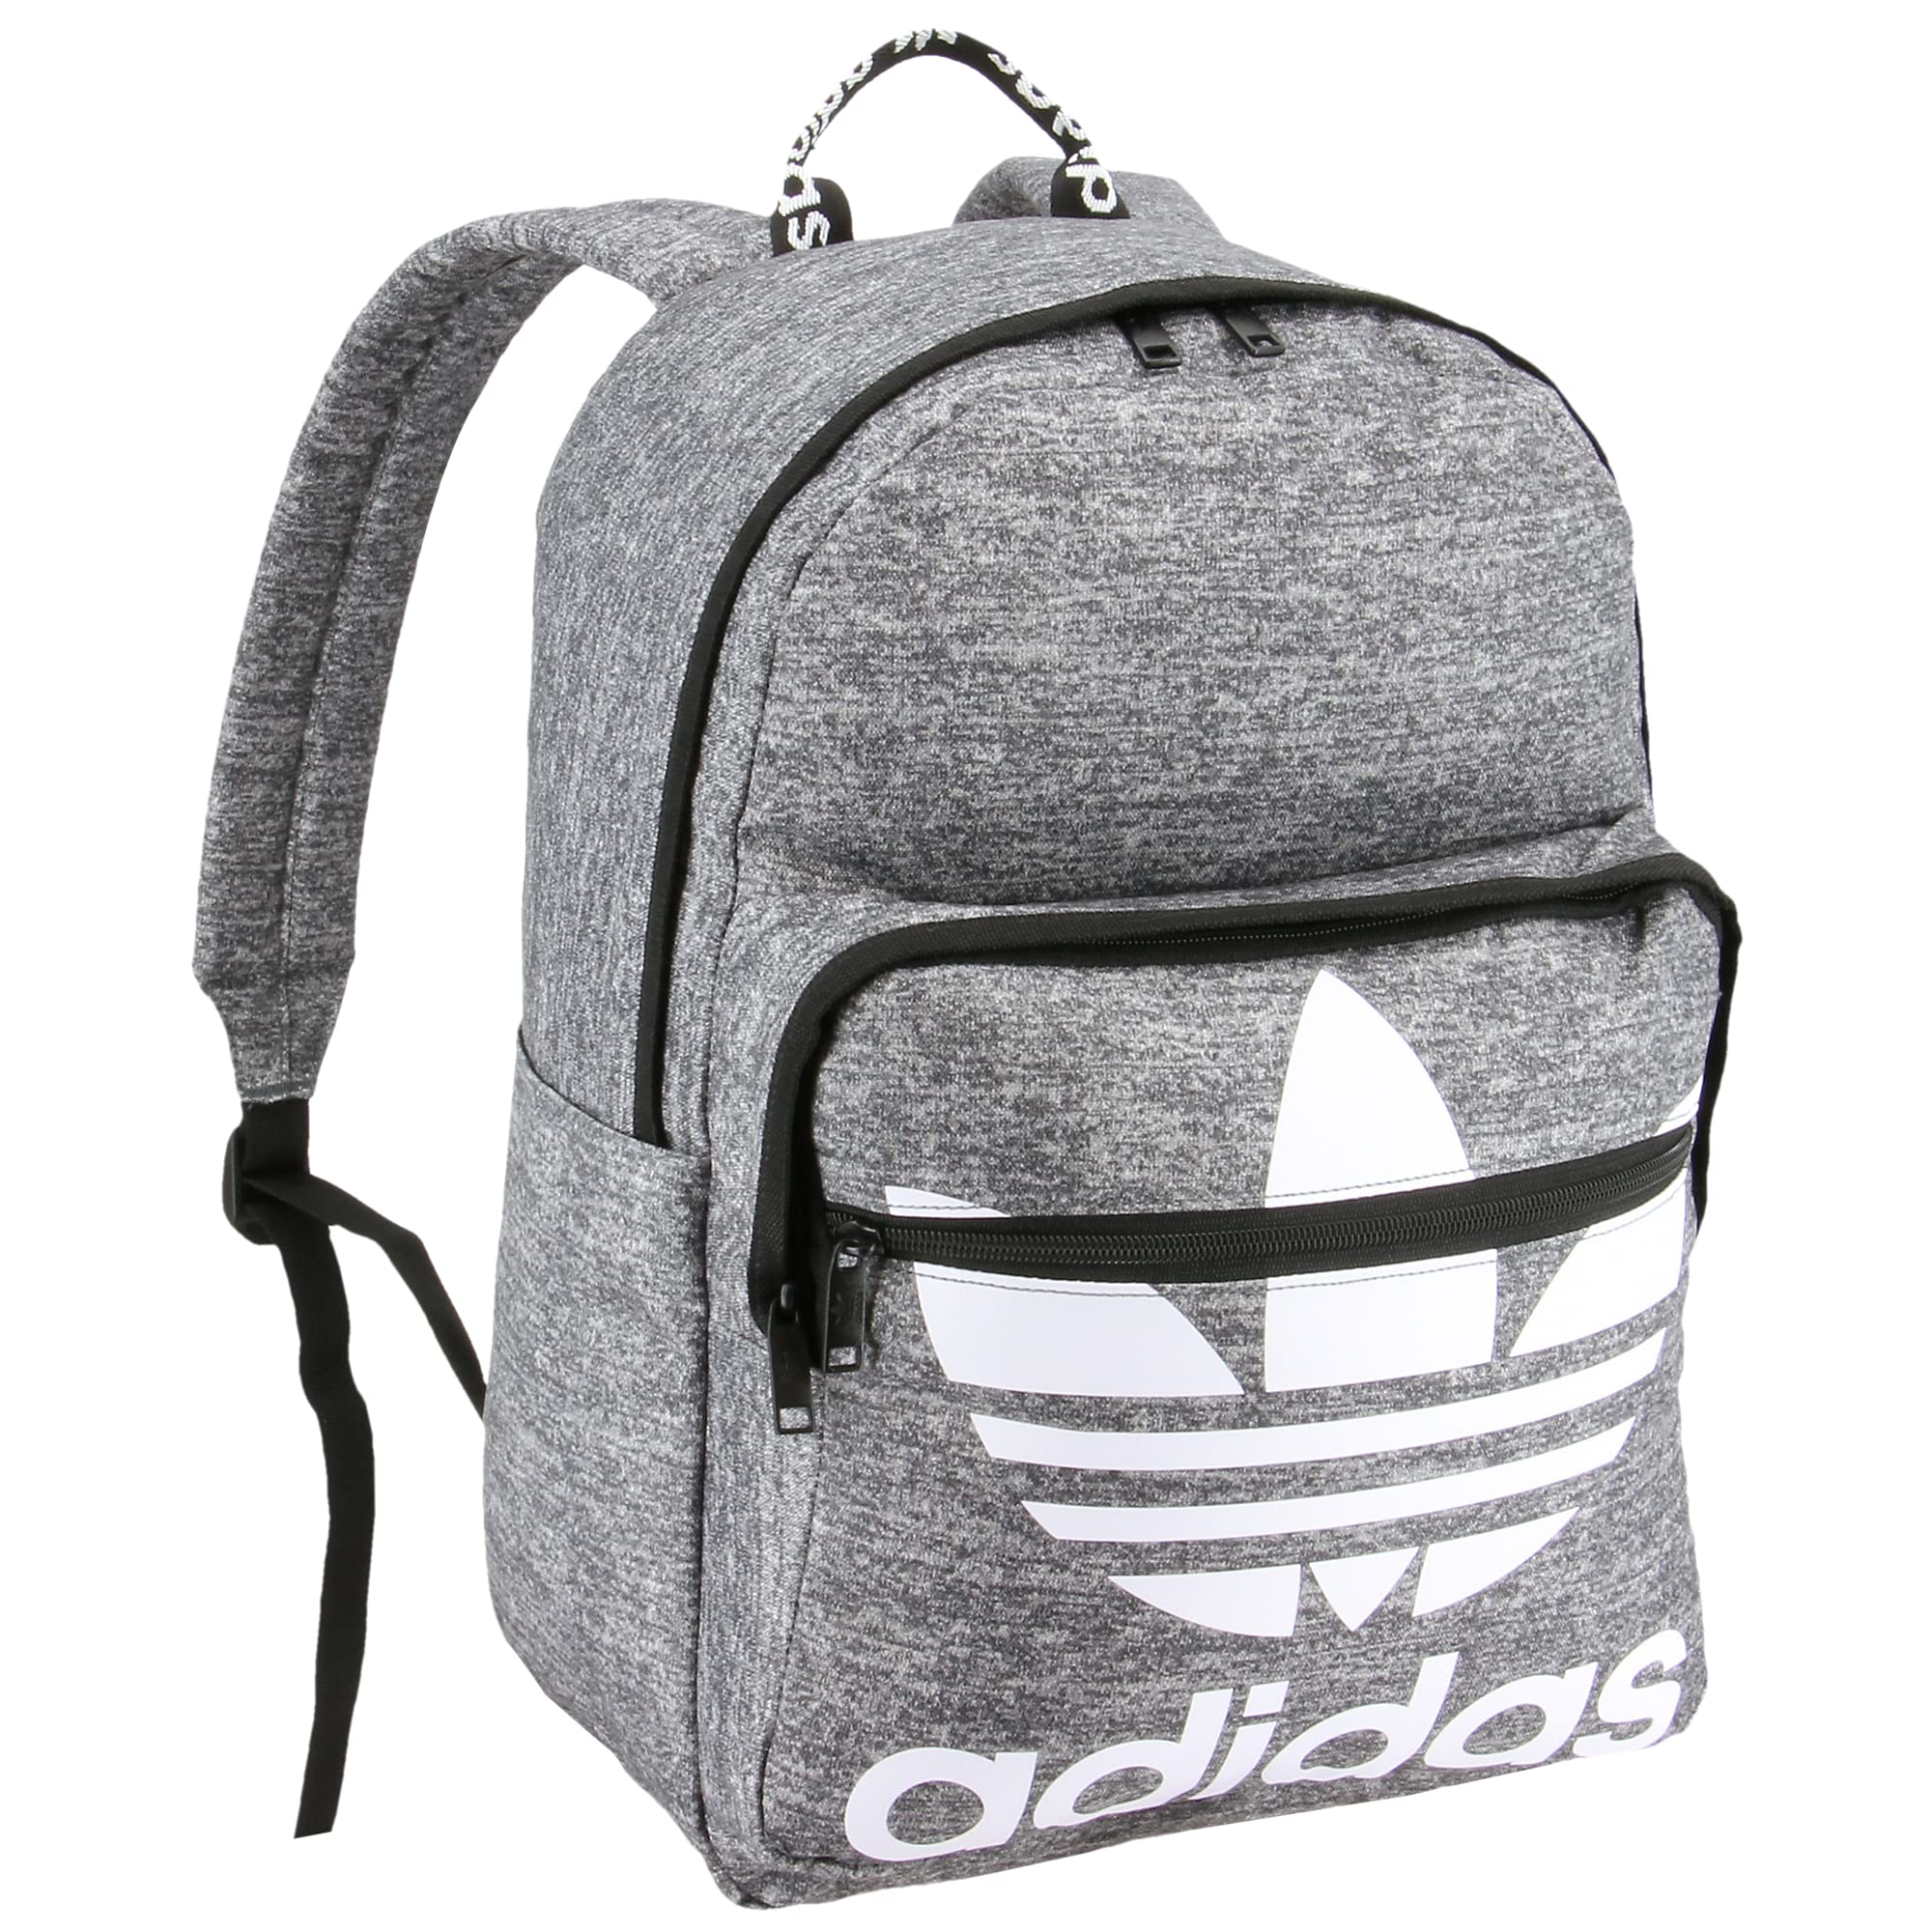 adidas Originals Trefoil Pocket Backpack, Jersey Onix grau, Einheitsgröße, Originals Trefoil Taschenrucksack